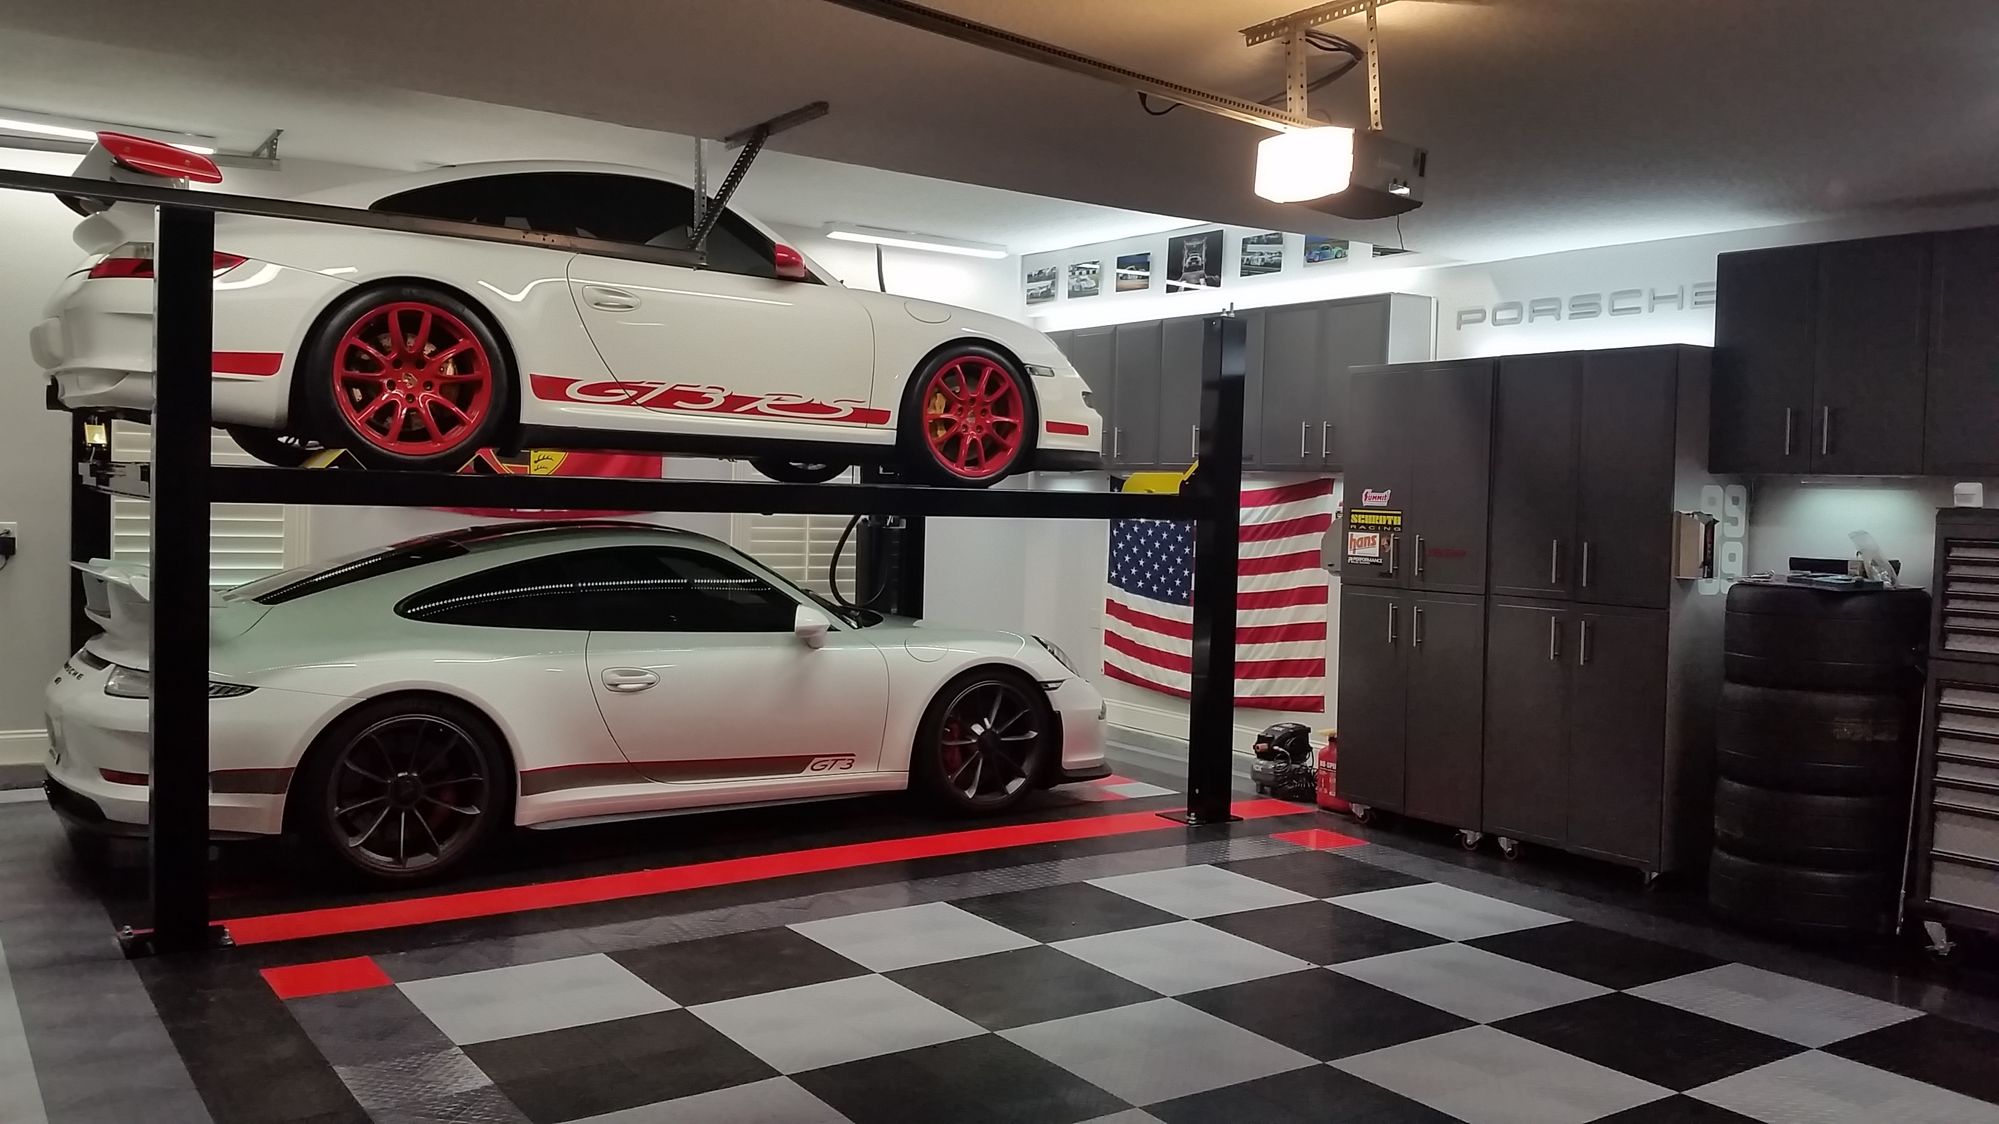 picture of your garage - Rennlist - Porsche Discussion Forums